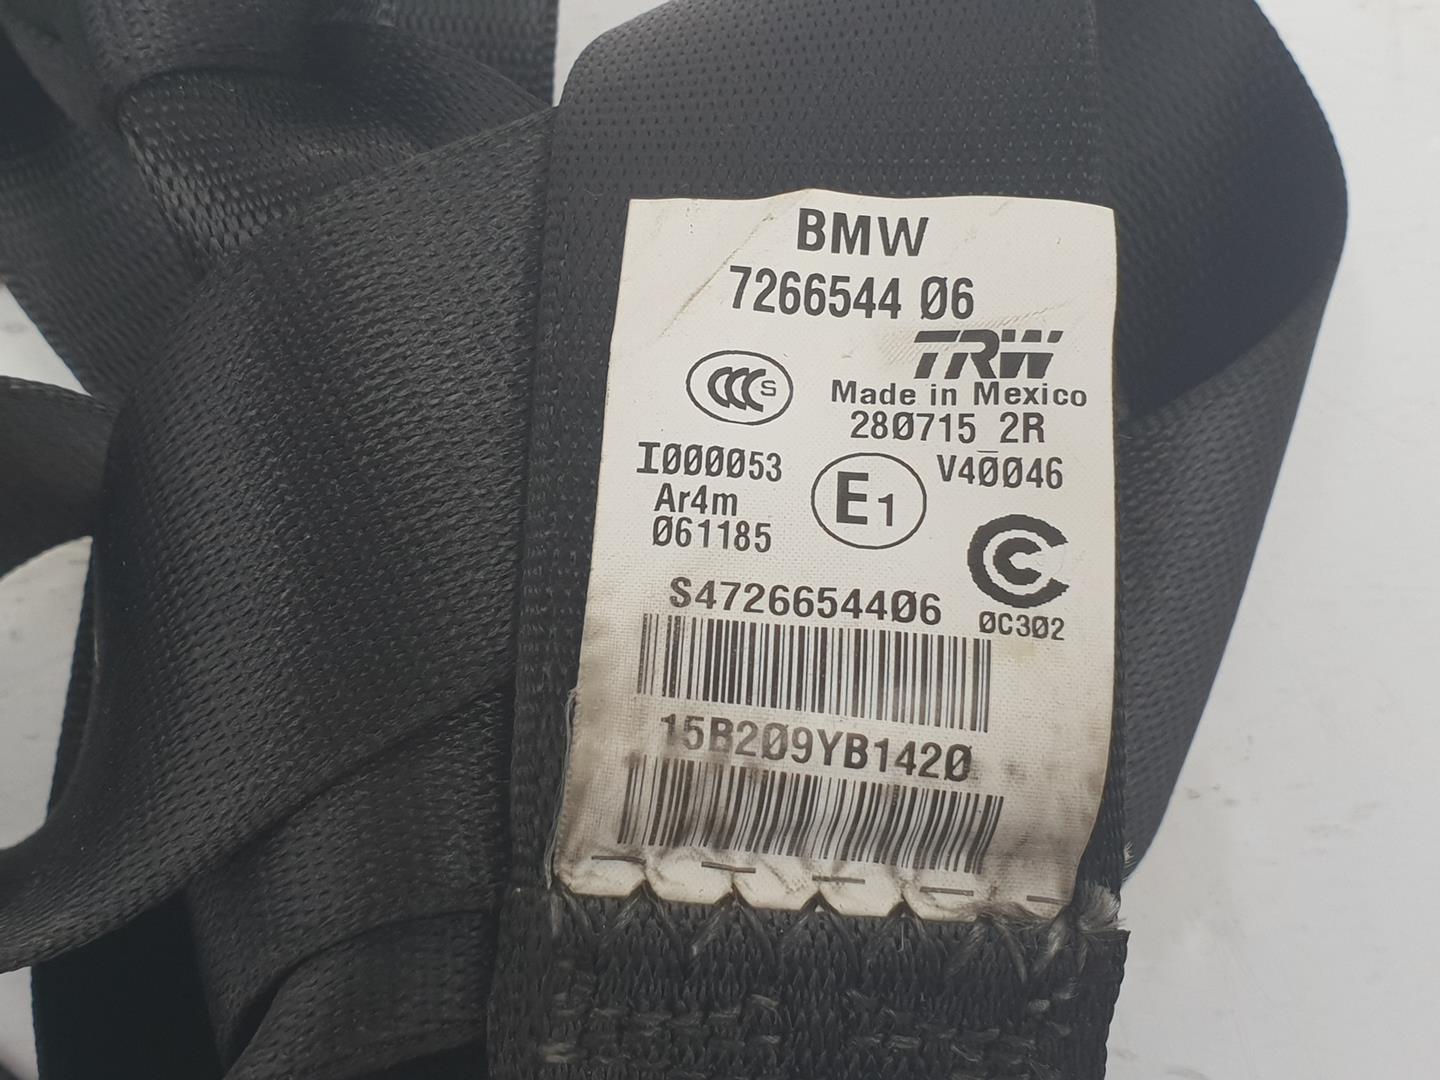 BMW X3 F25 (2010-2017) Ремень безопасности задний правый 7266544, 72117266544 24242832